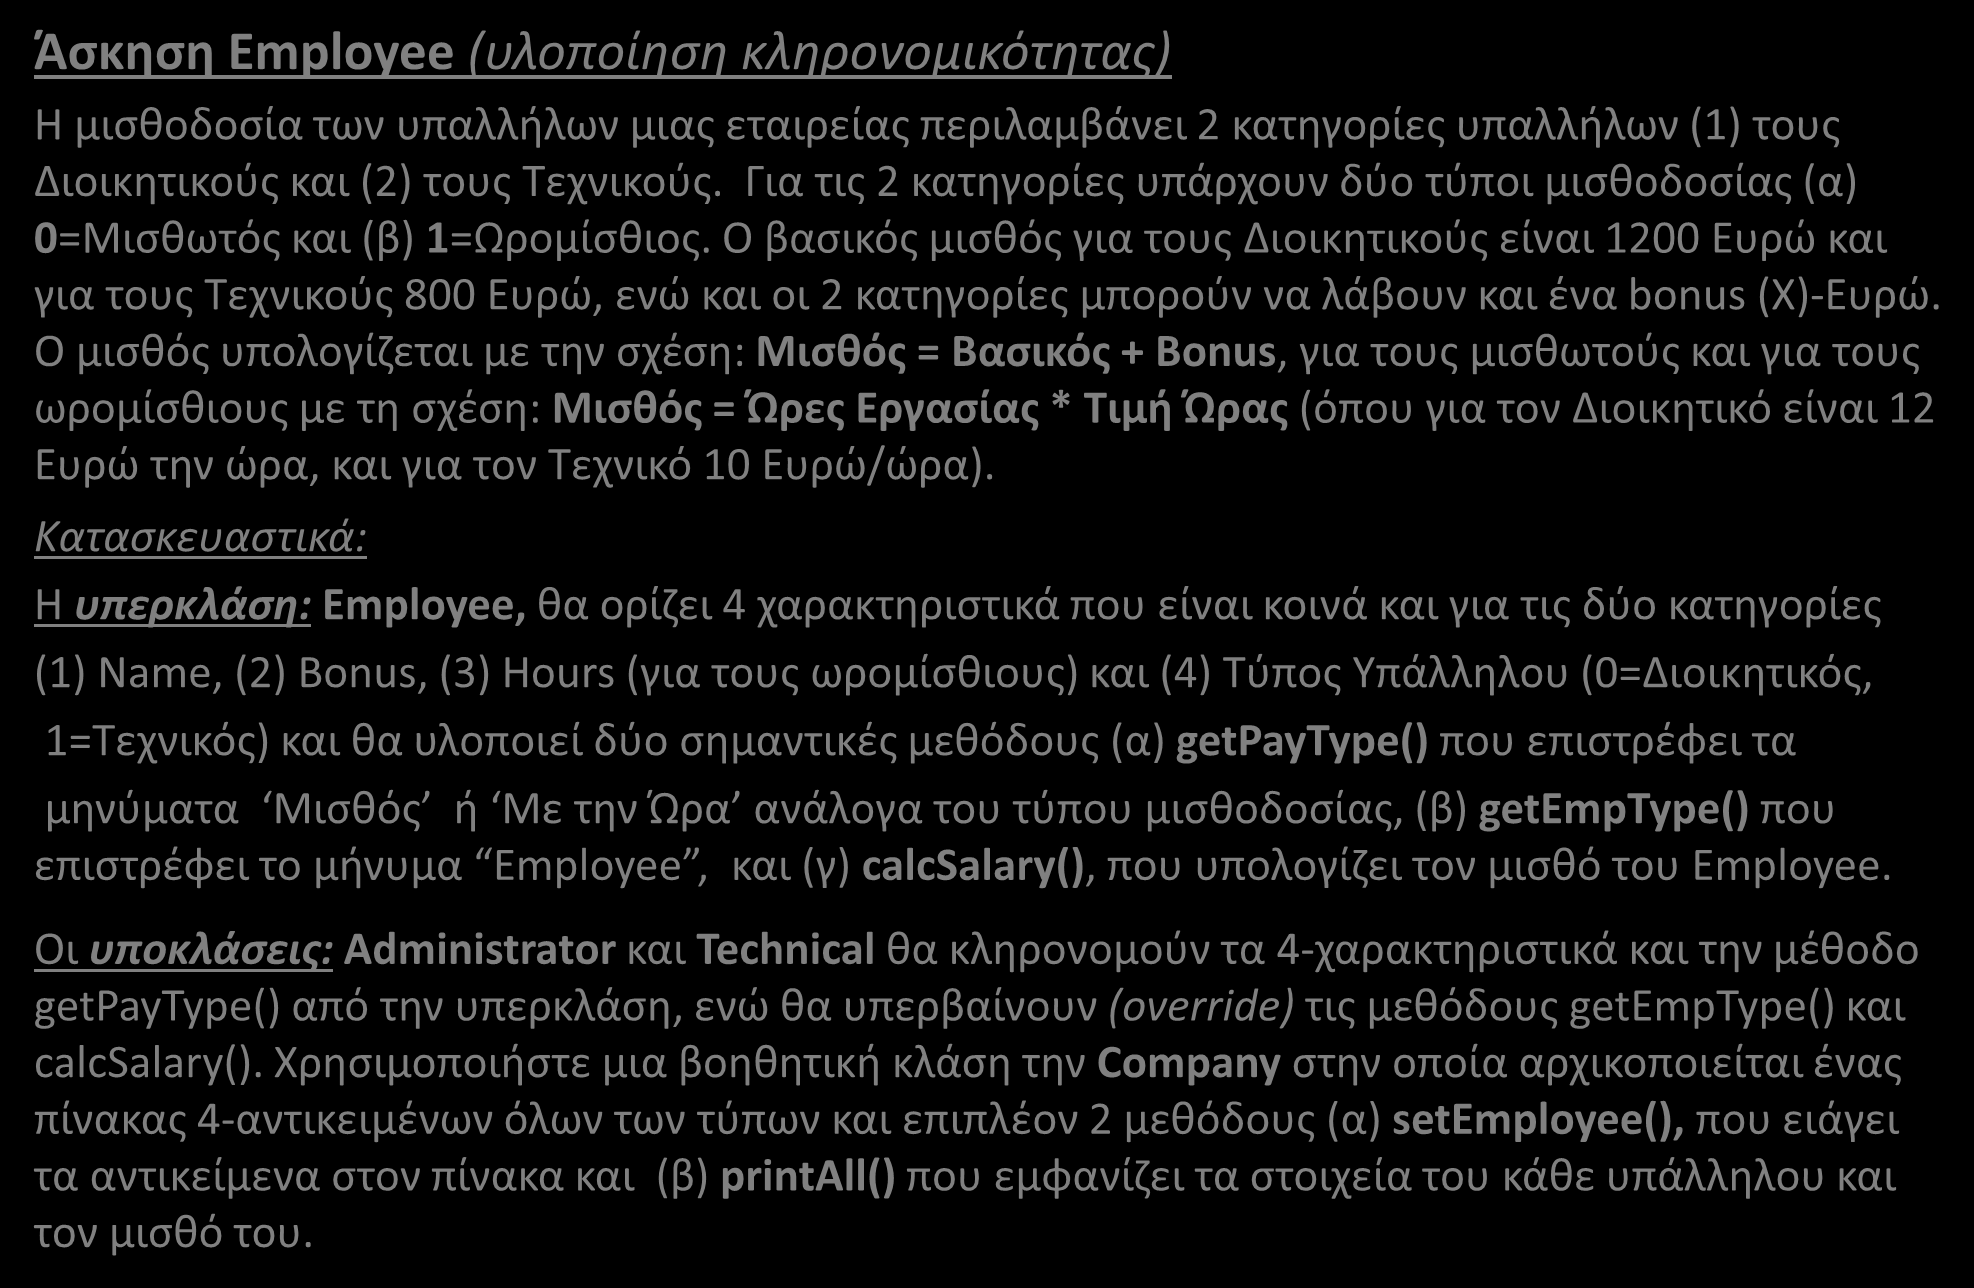 Κληρονομικότητα (Άσκηση-1) (1/6) Άσκηση Employee (υλοποίηση κληρονομικότητας) Η μισθοδοσία των υπαλλήλων μιας εταιρείας περιλαμβάνει 2 κατηγορίες υπαλλήλων (1) τους Διοικητικούς και (2) τους